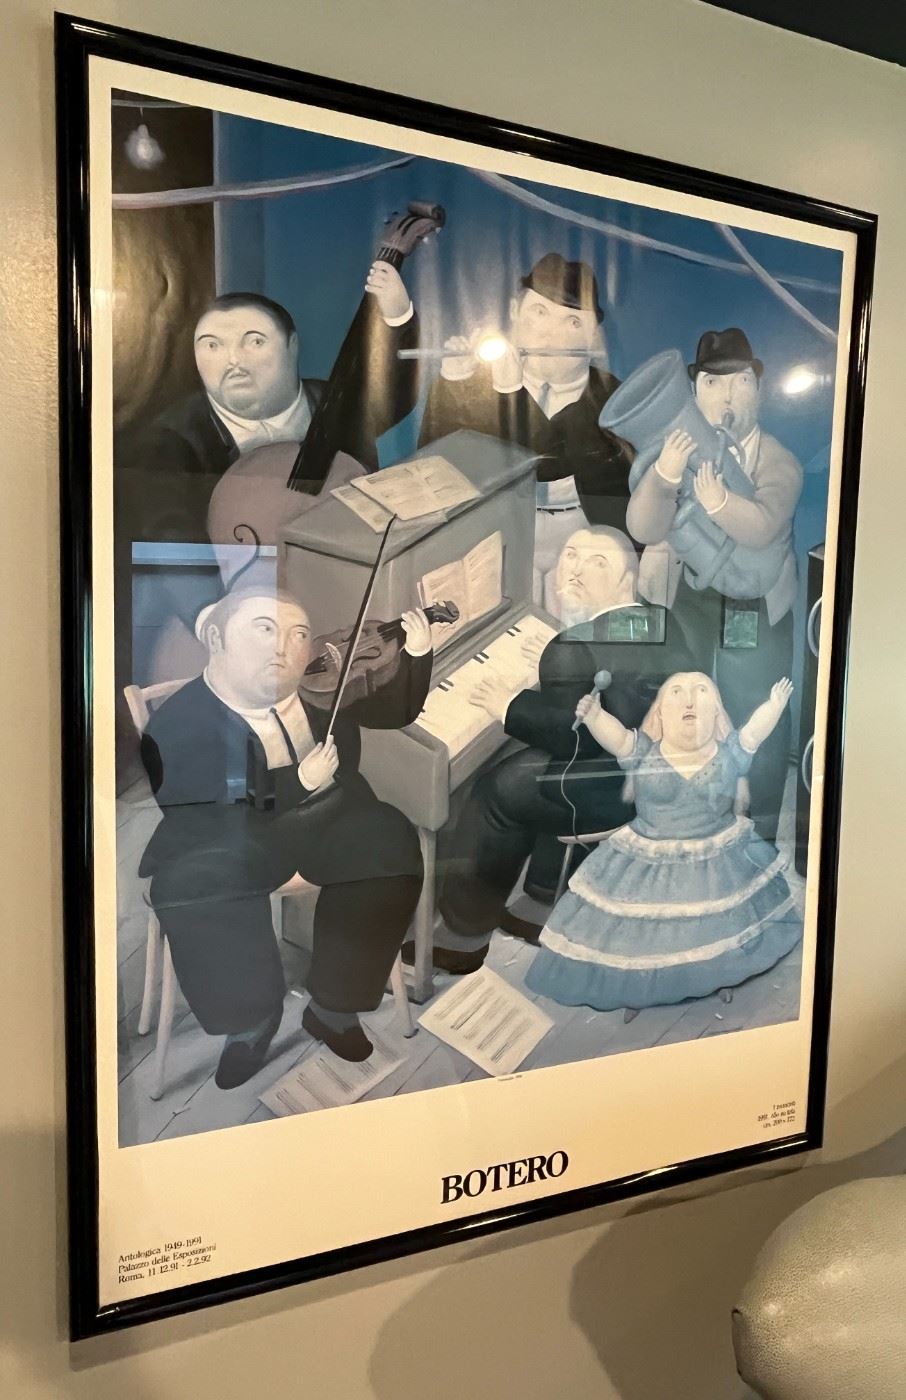 Fernando Botero "The Musicians" Poster

